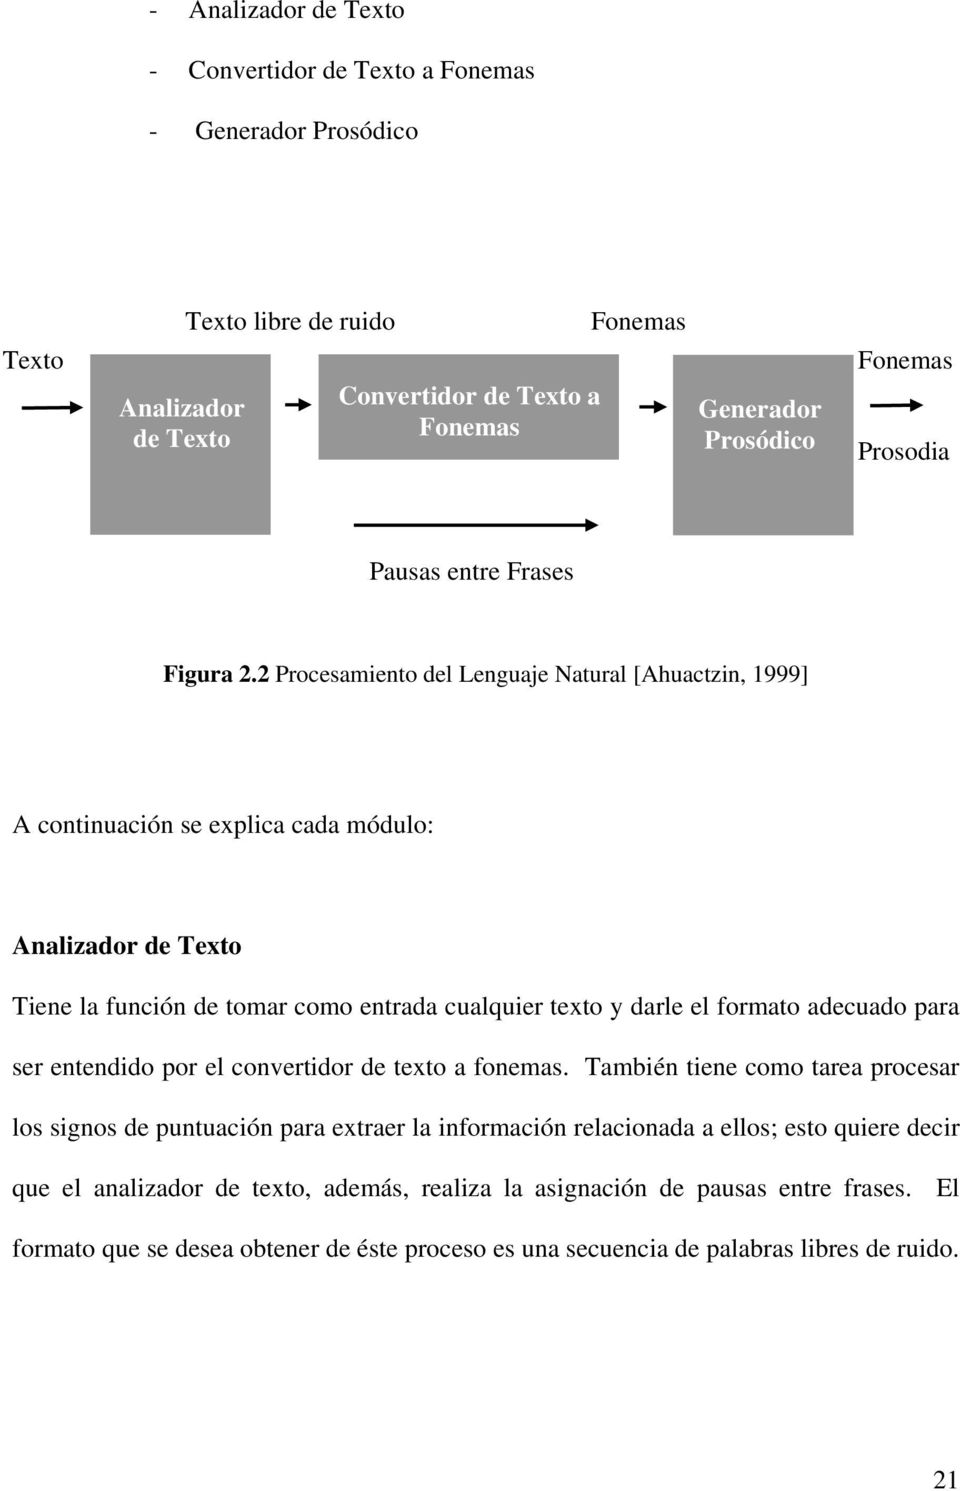 2 Procesamiento del Lenguaje Natural [Ahuactzin, 1999] A continuación se explica cada módulo: Analizador de Texto Tiene la función de tomar como entrada cualquier texto y darle el formato adecuado